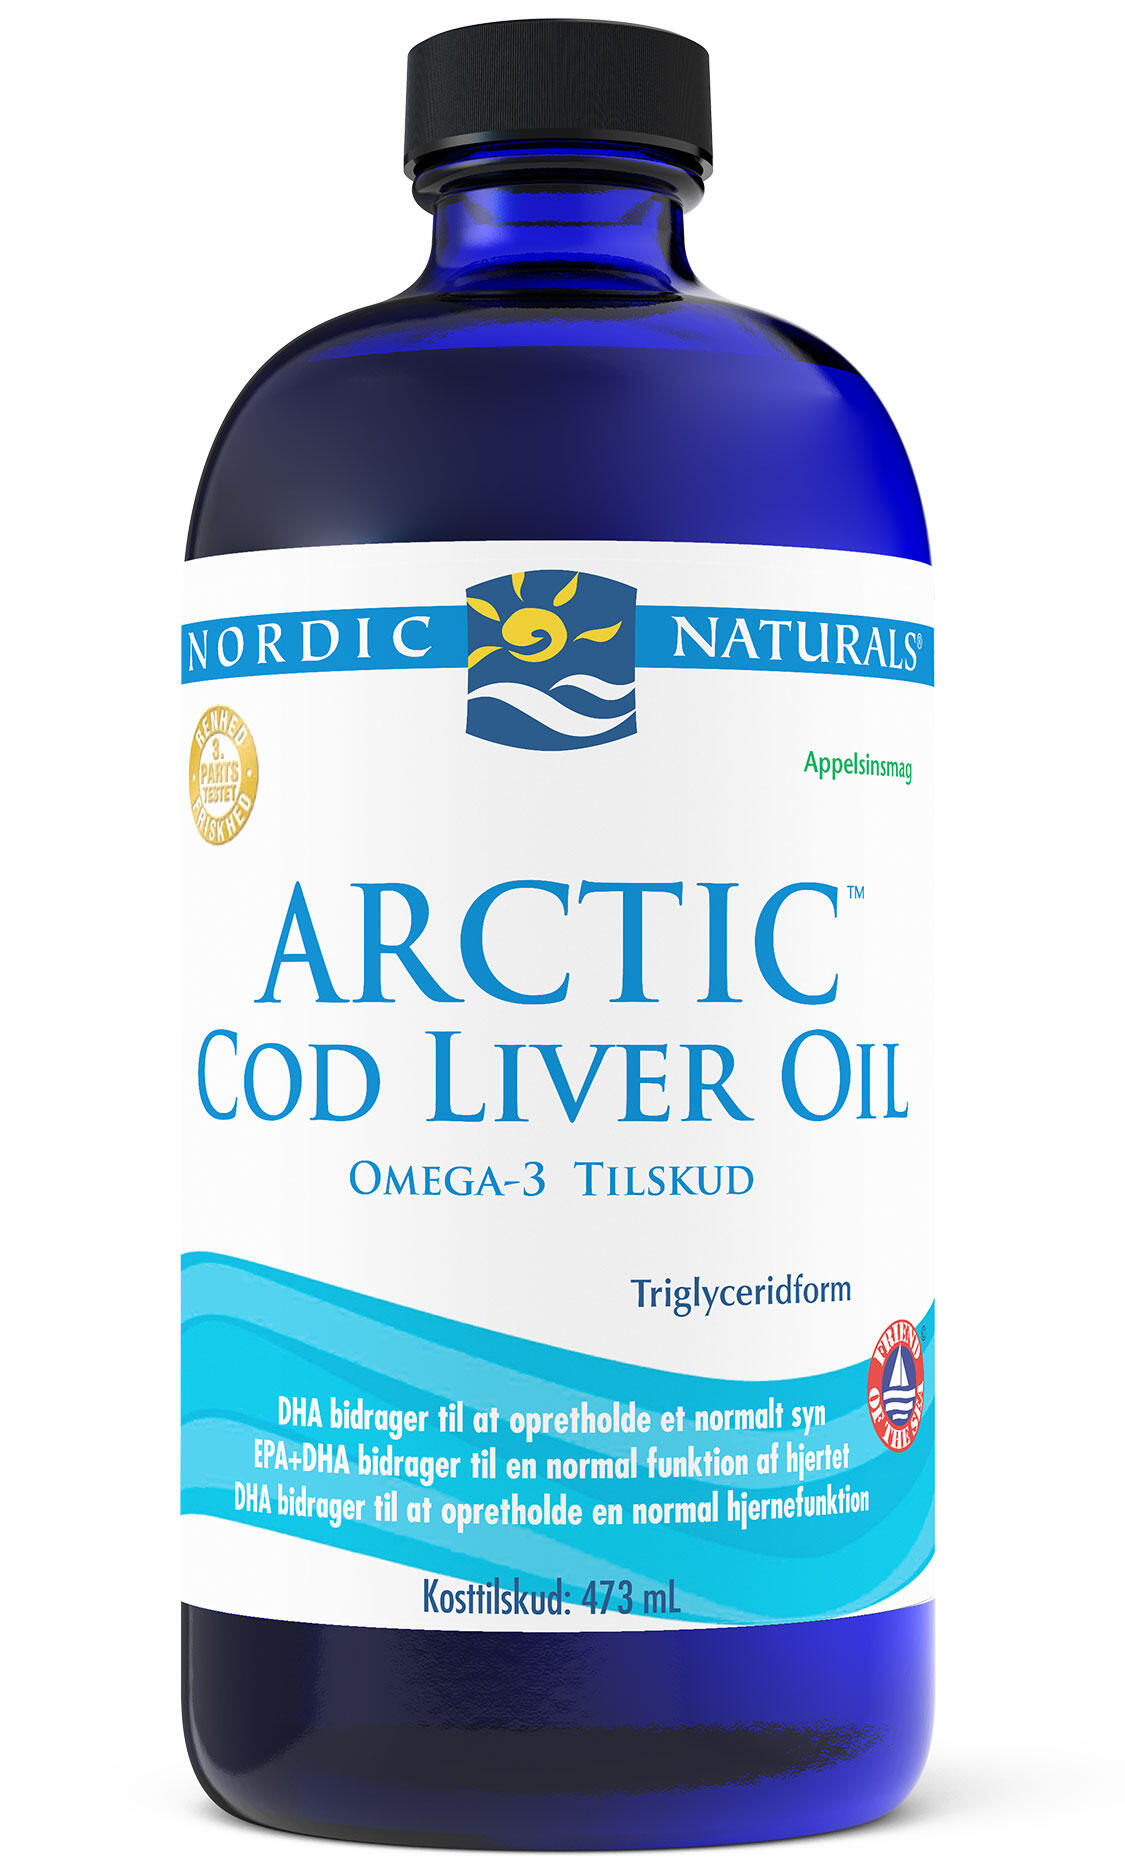 Billede af Torskelevertran m.app.Cod liver oil - 473 ml. hos Duft og Natur